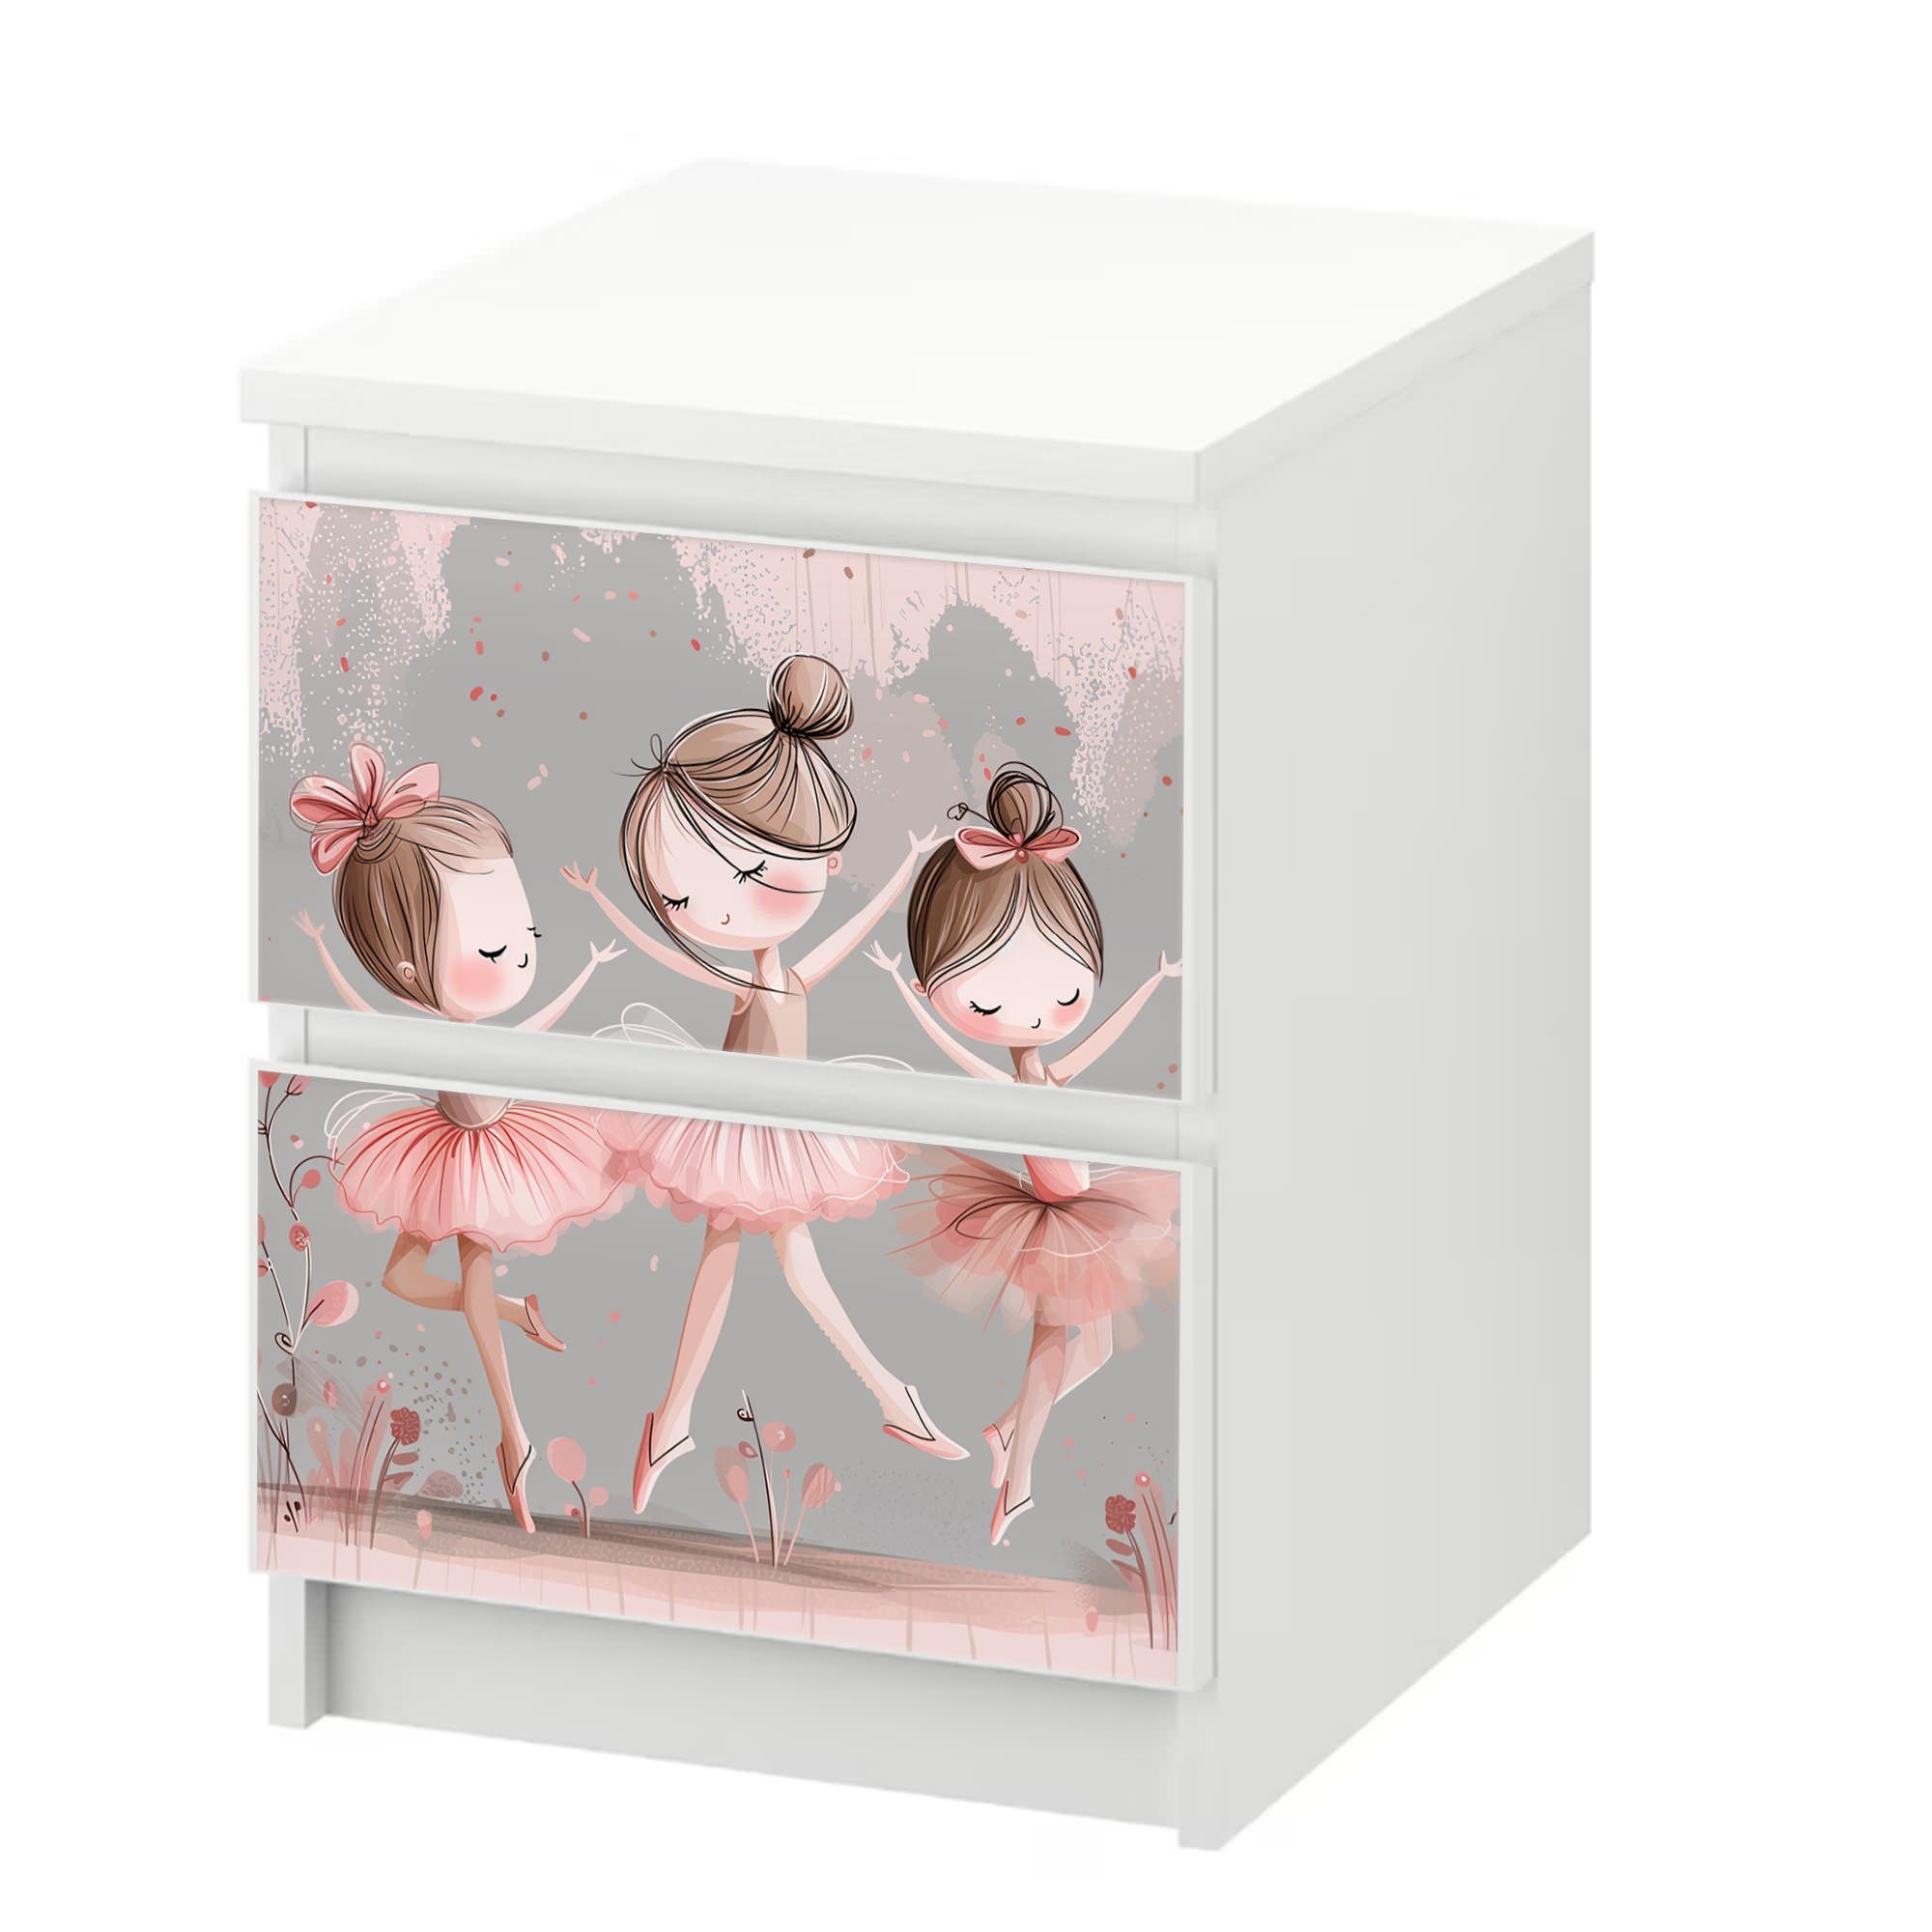 Sunnywall Möbelfolie passend für IKEA Malm Kommode Schrankfolie Aufkleber Ballerinas modern, blasenfreie selbstklebende Folie (SCHRANK NICHT INKLUSIVE)